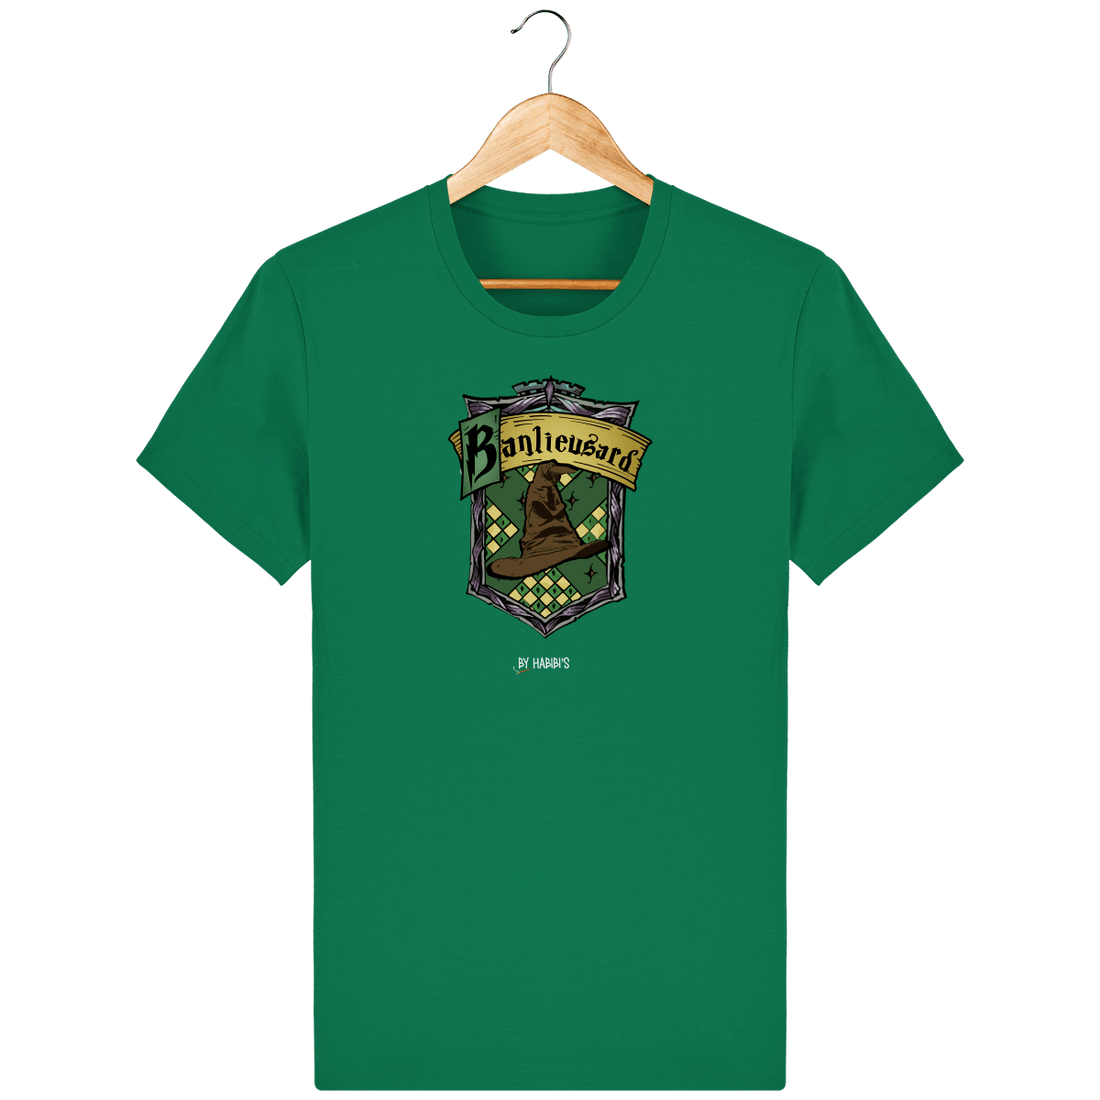 Unisexe>Tee-shirts - T-shirt Homme <br> Serpentard Banlieusard